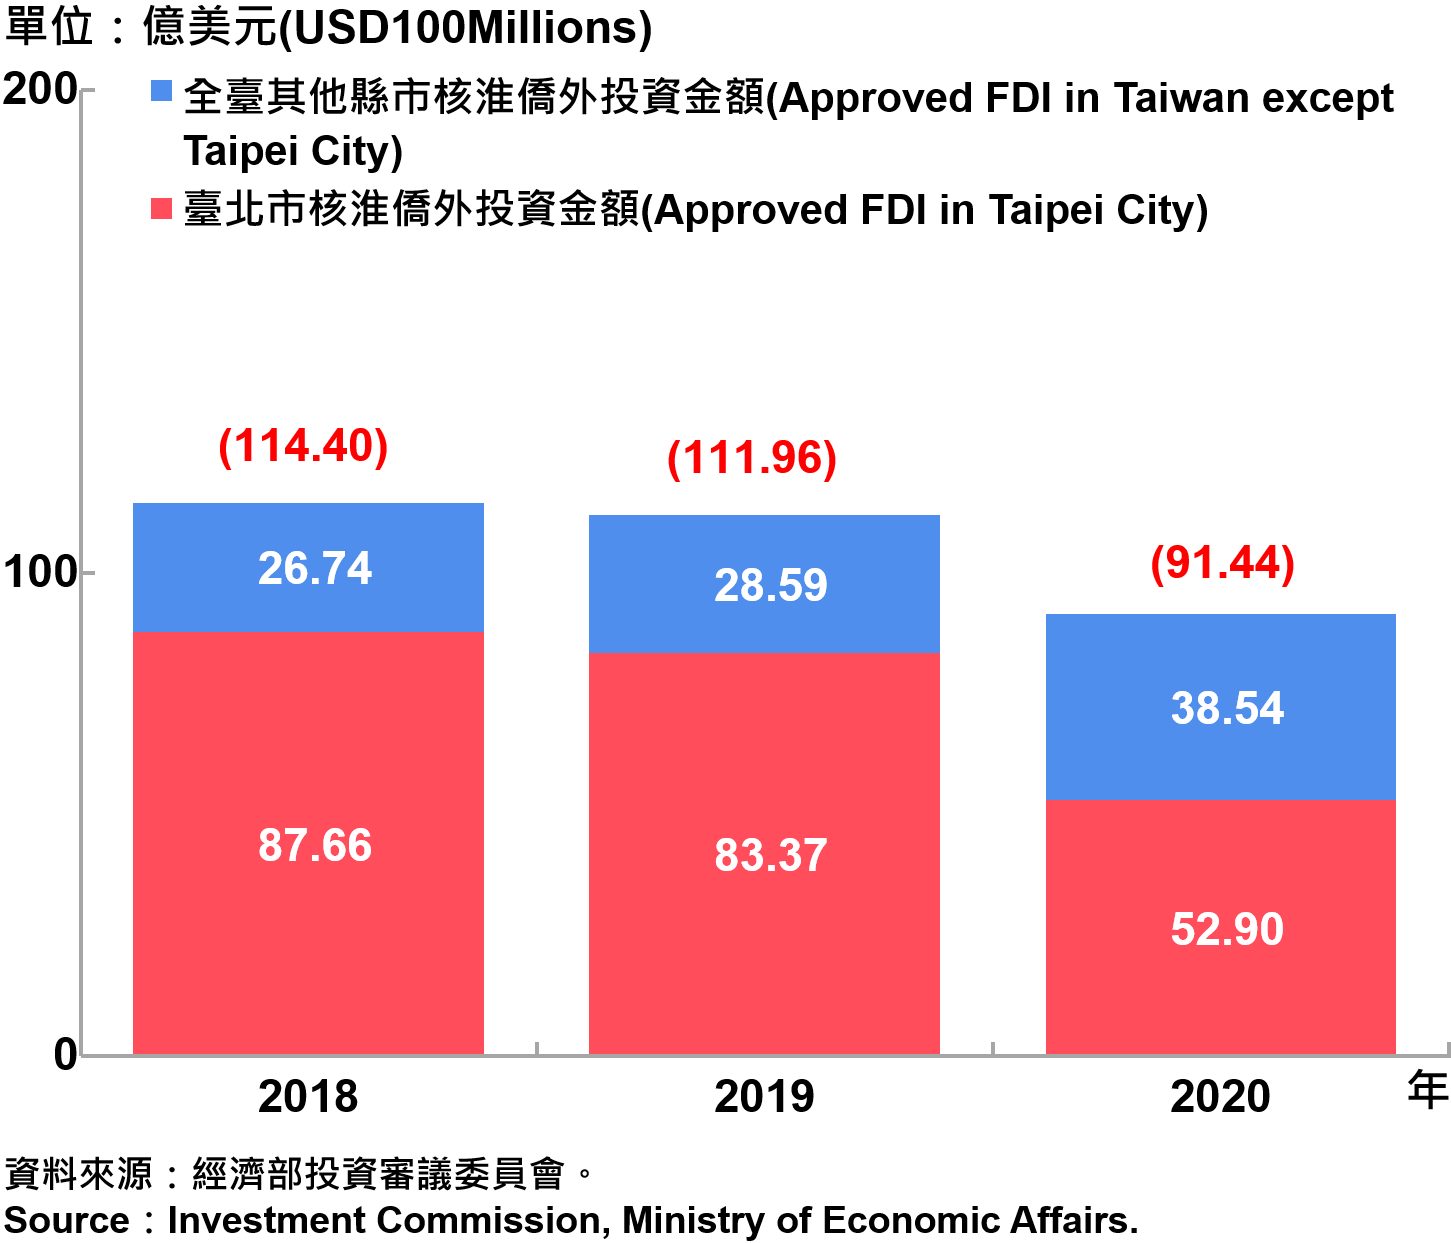 臺北市與全國僑外投資金額—2020 Foreign Direct Investment（FDI）in Taipei City and Taiwan—2020